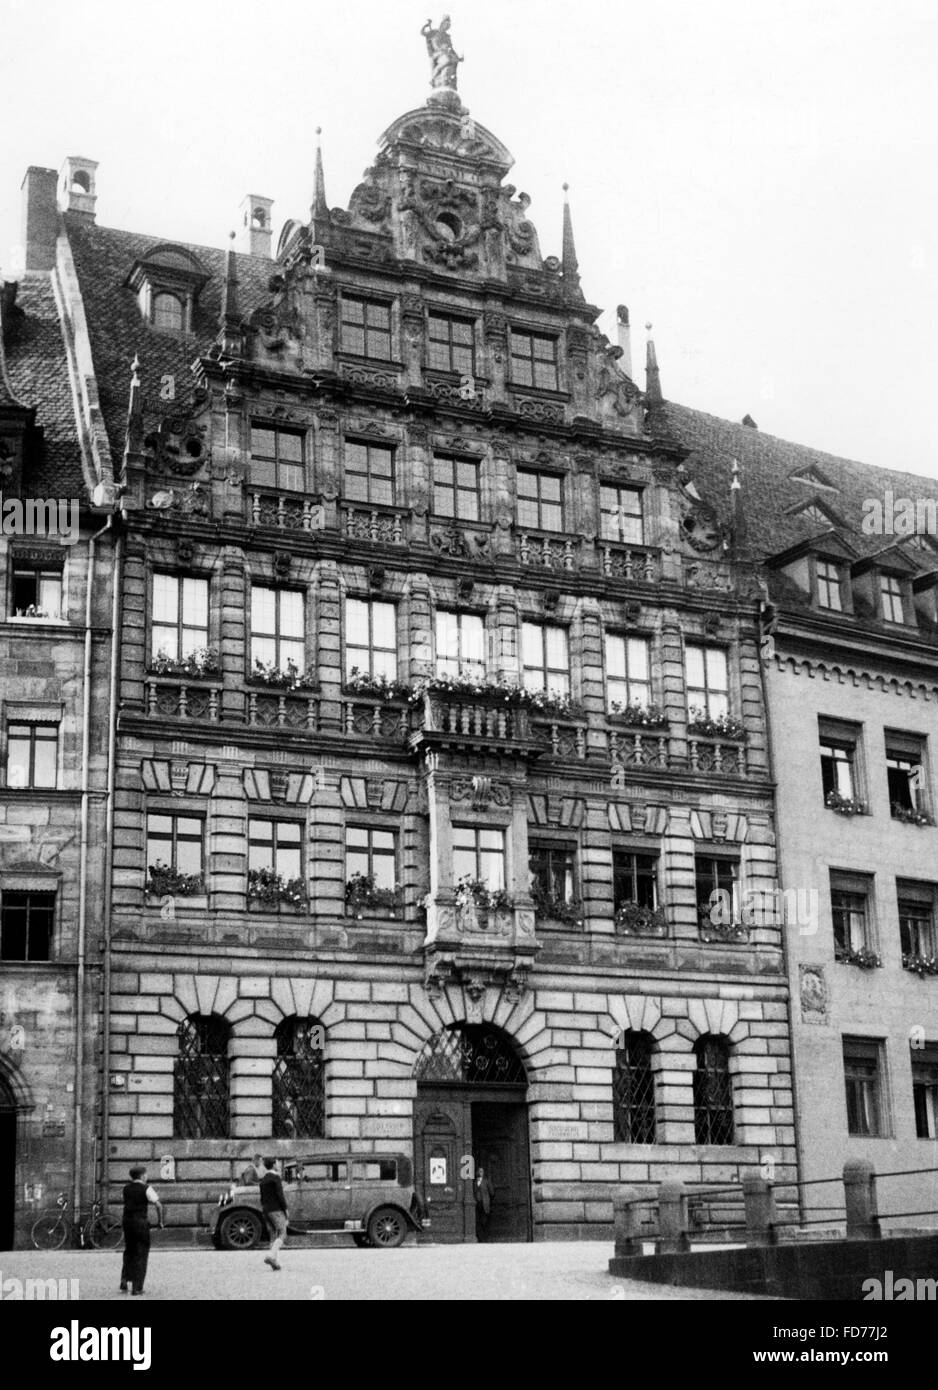 The Pellerhaus in Nuremberg Stock Photo